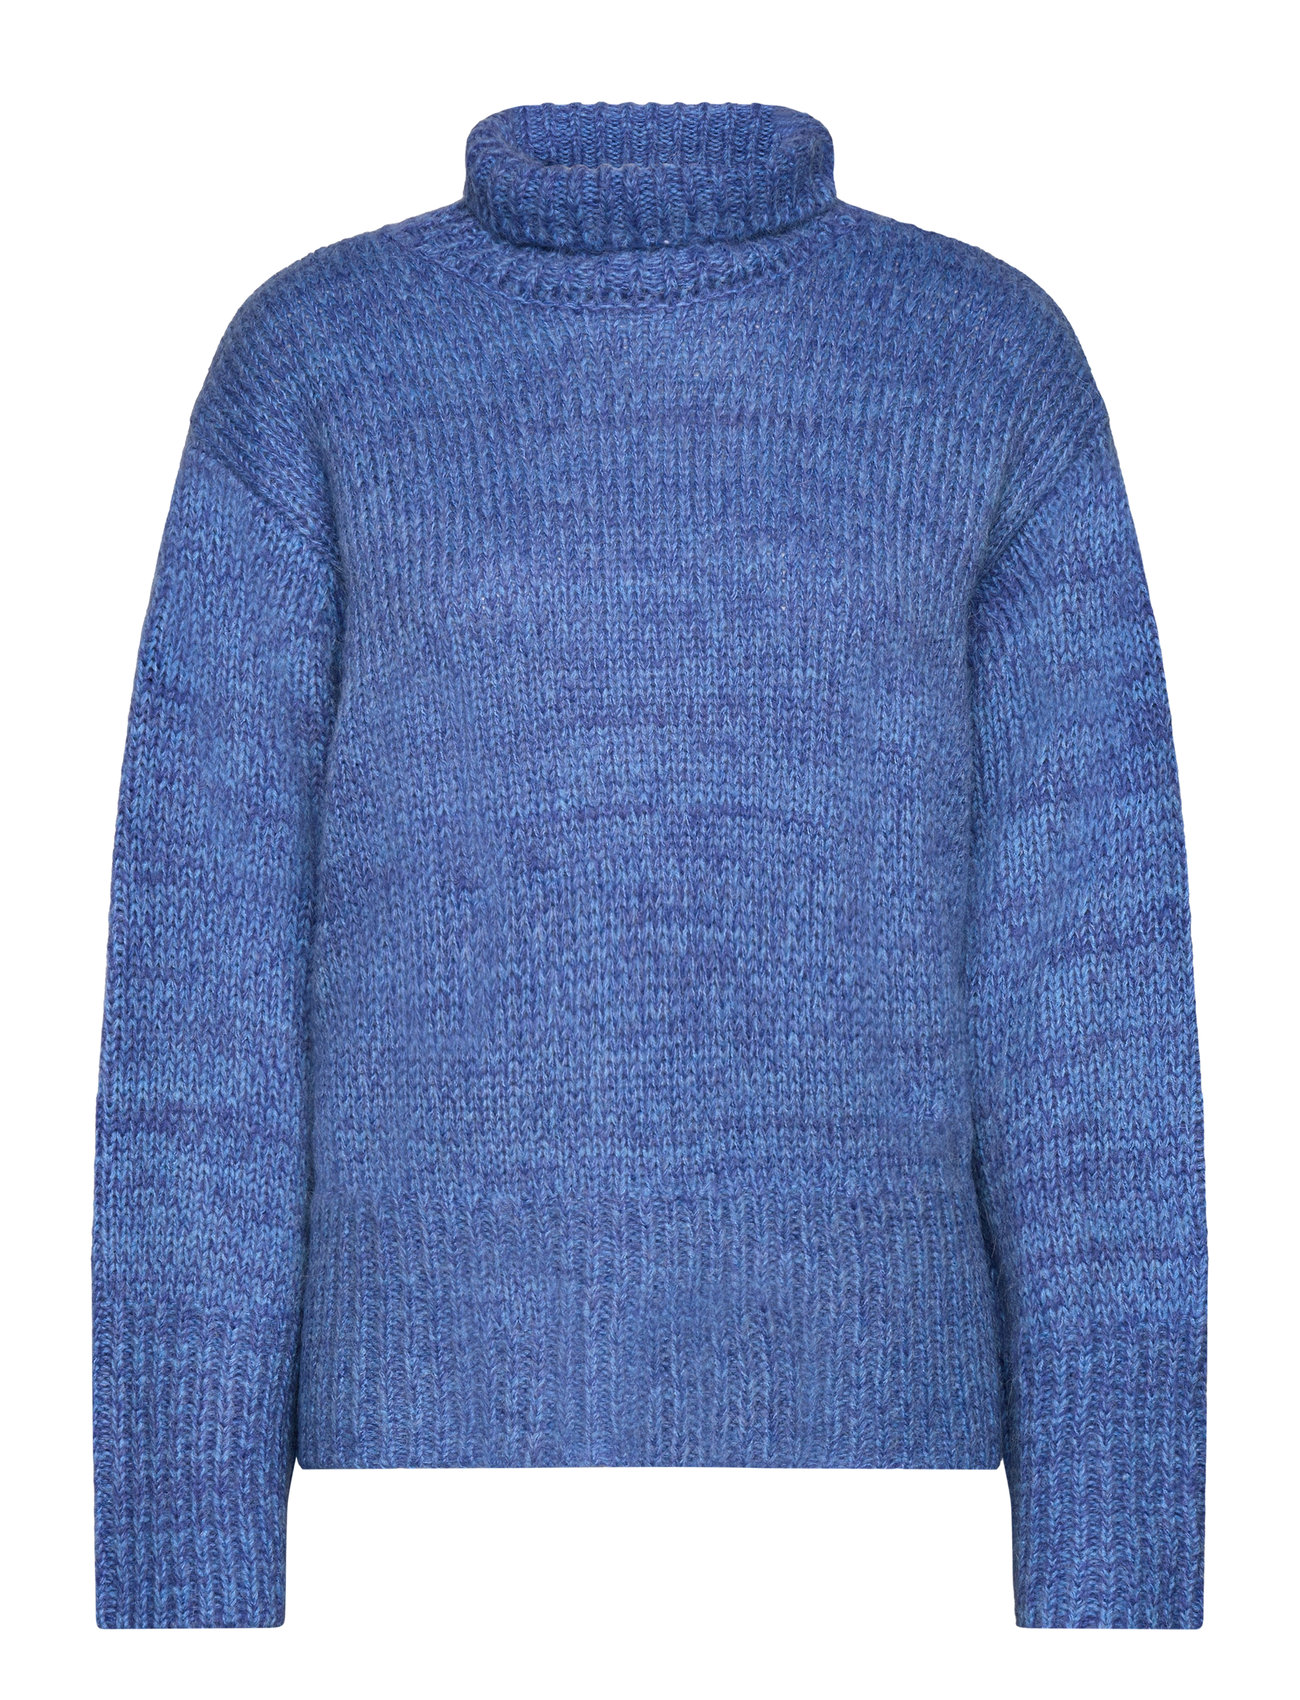 Fuscia Melange Knit Top Tops Knitwear Jumpers Blue NORR